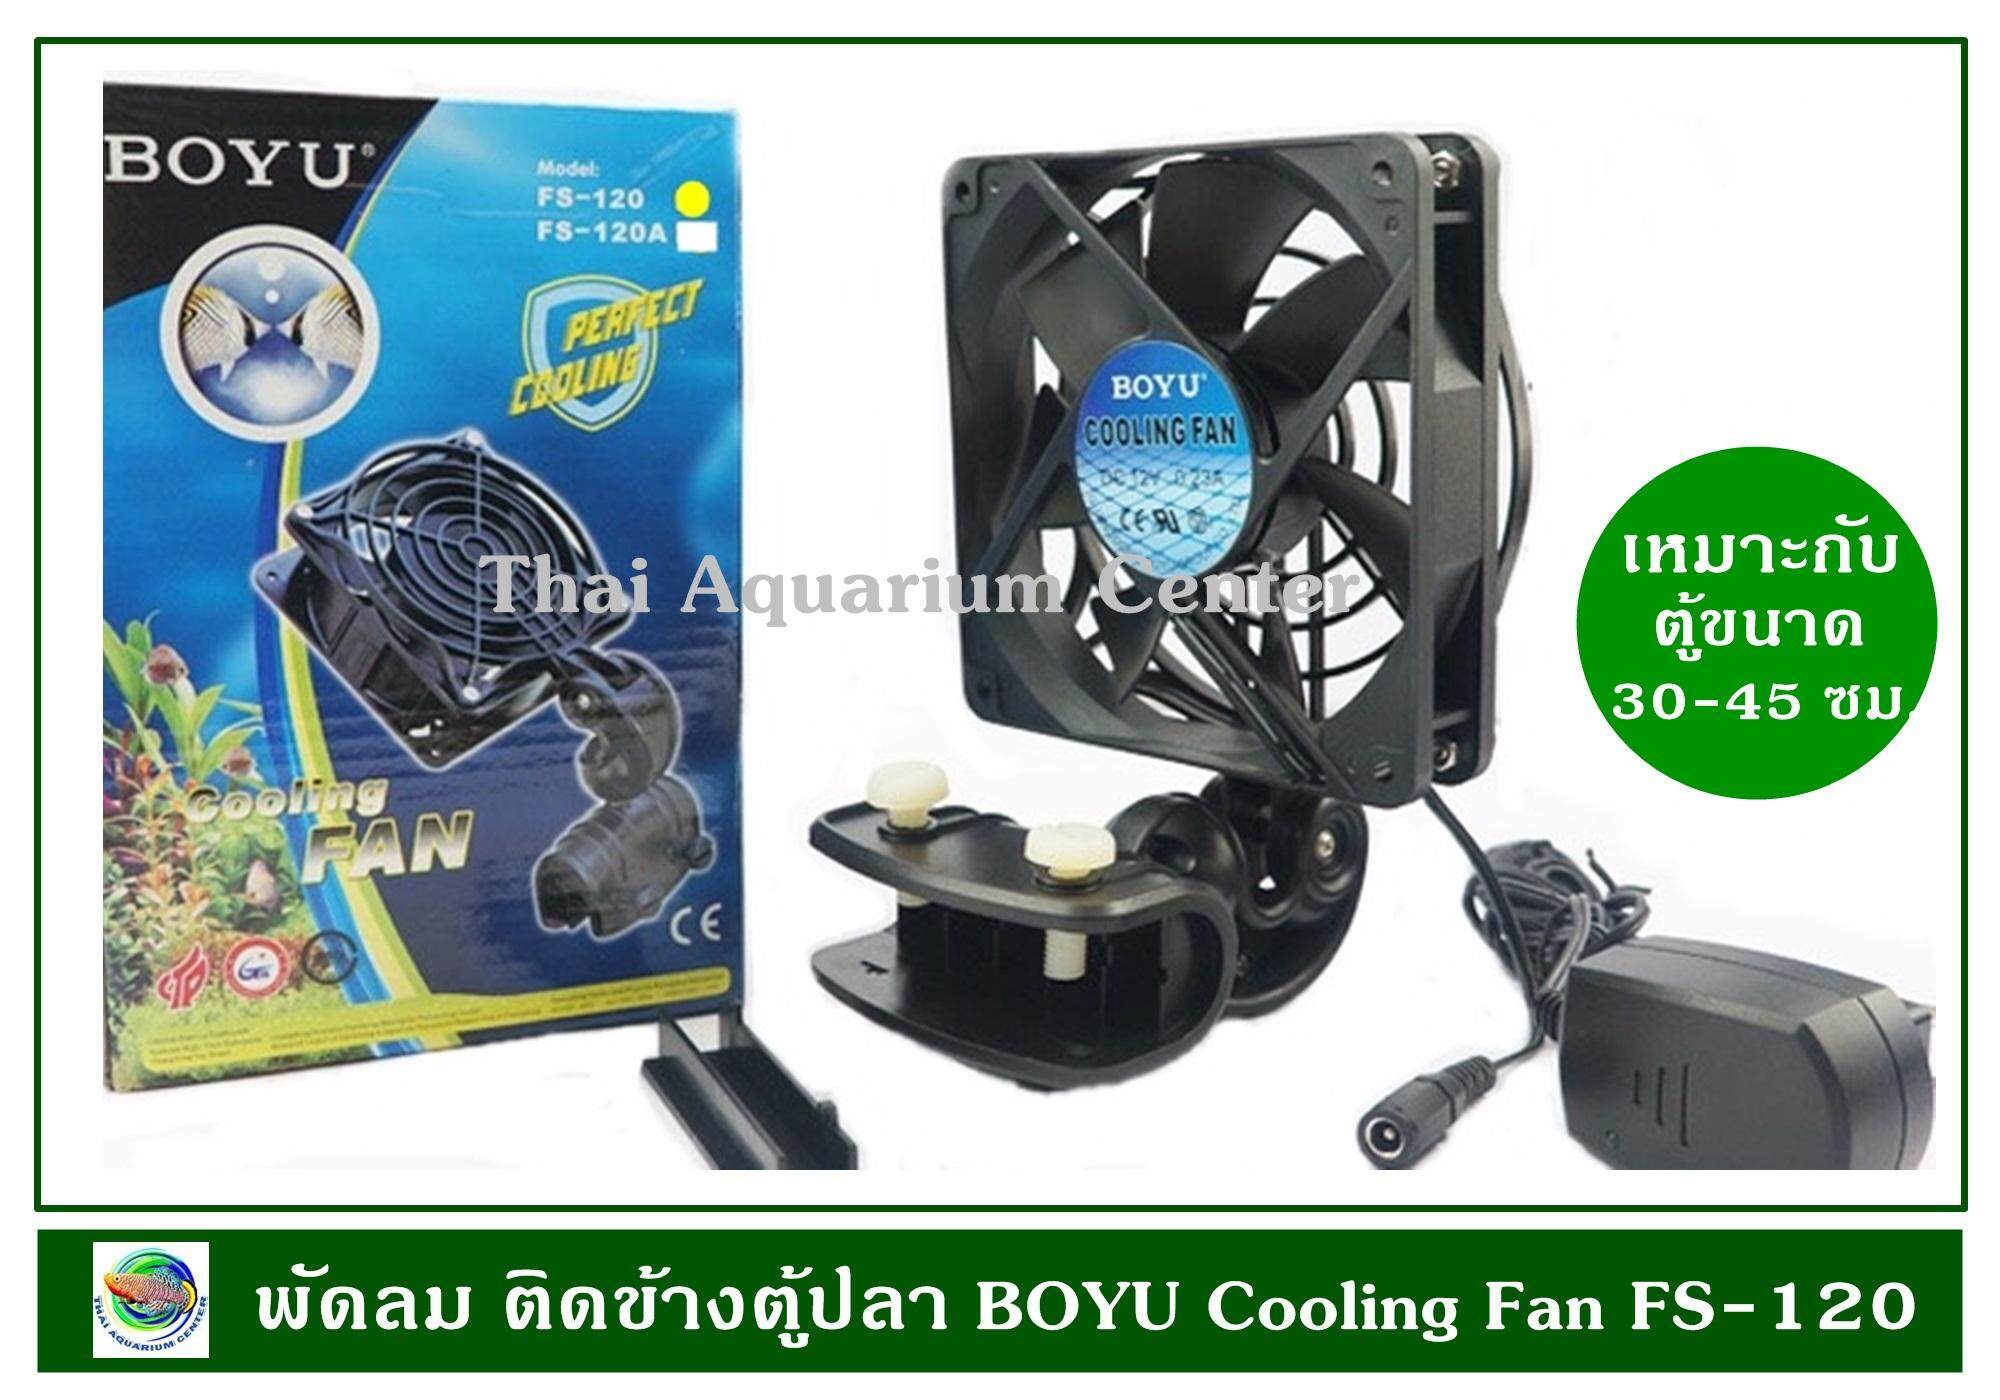 BOYU Cooling Fan FS-120 พัดลมช่วยทำความเย็น ขนาด 1 ใบพัด